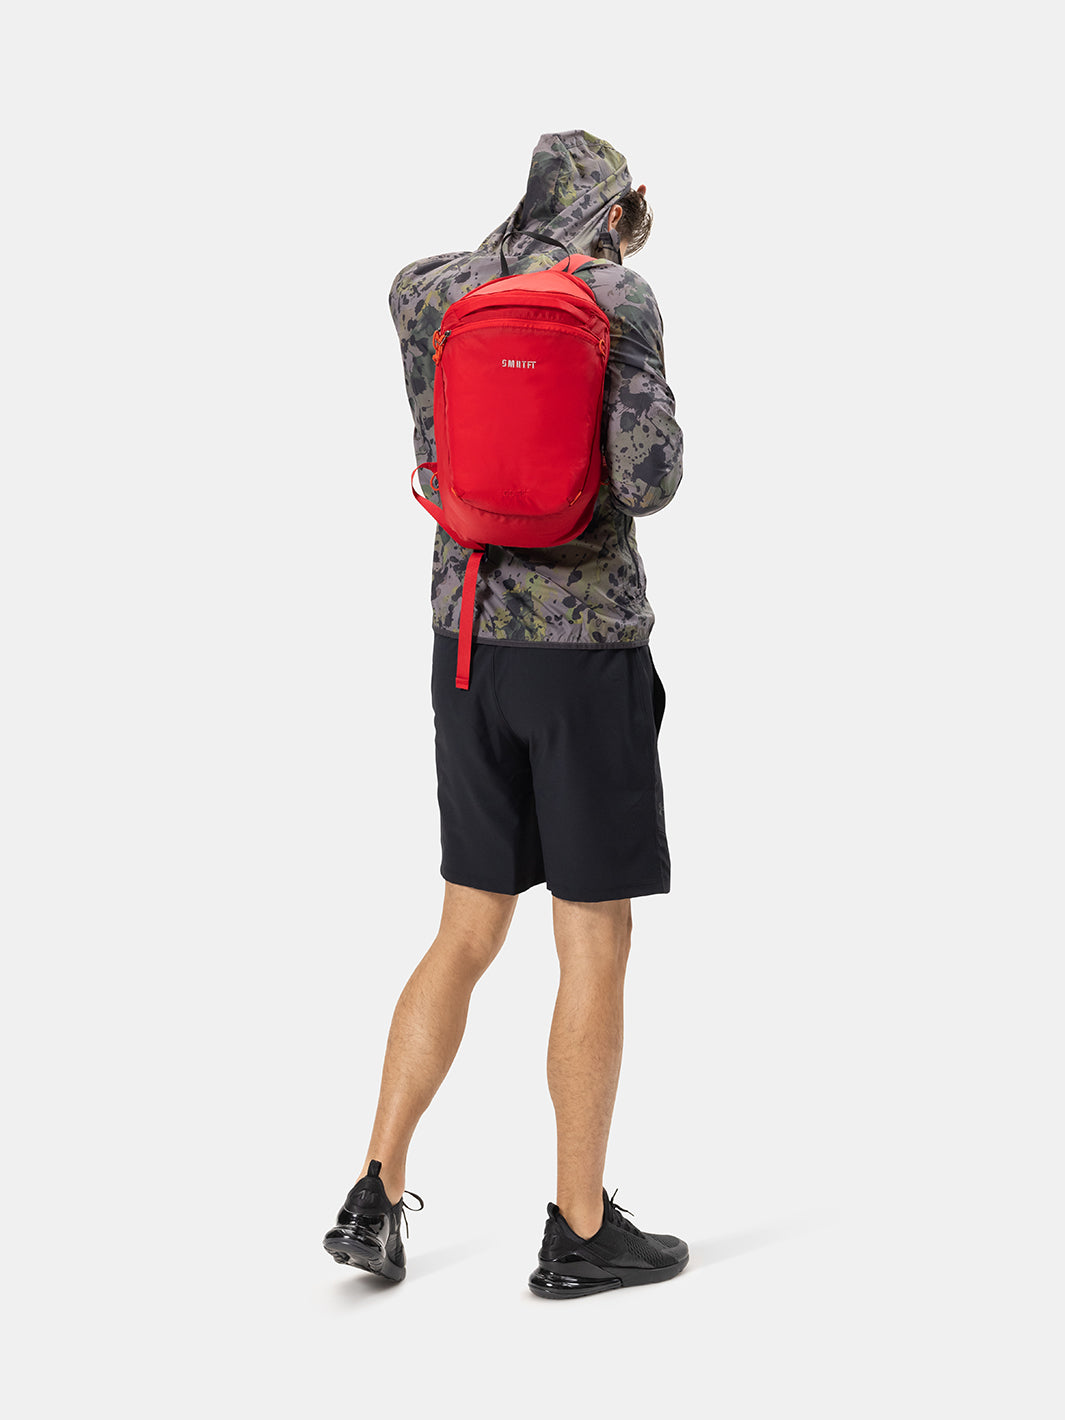 Red Backpack For Men | Red SMRTFT Backpack | SMRTPAC GO